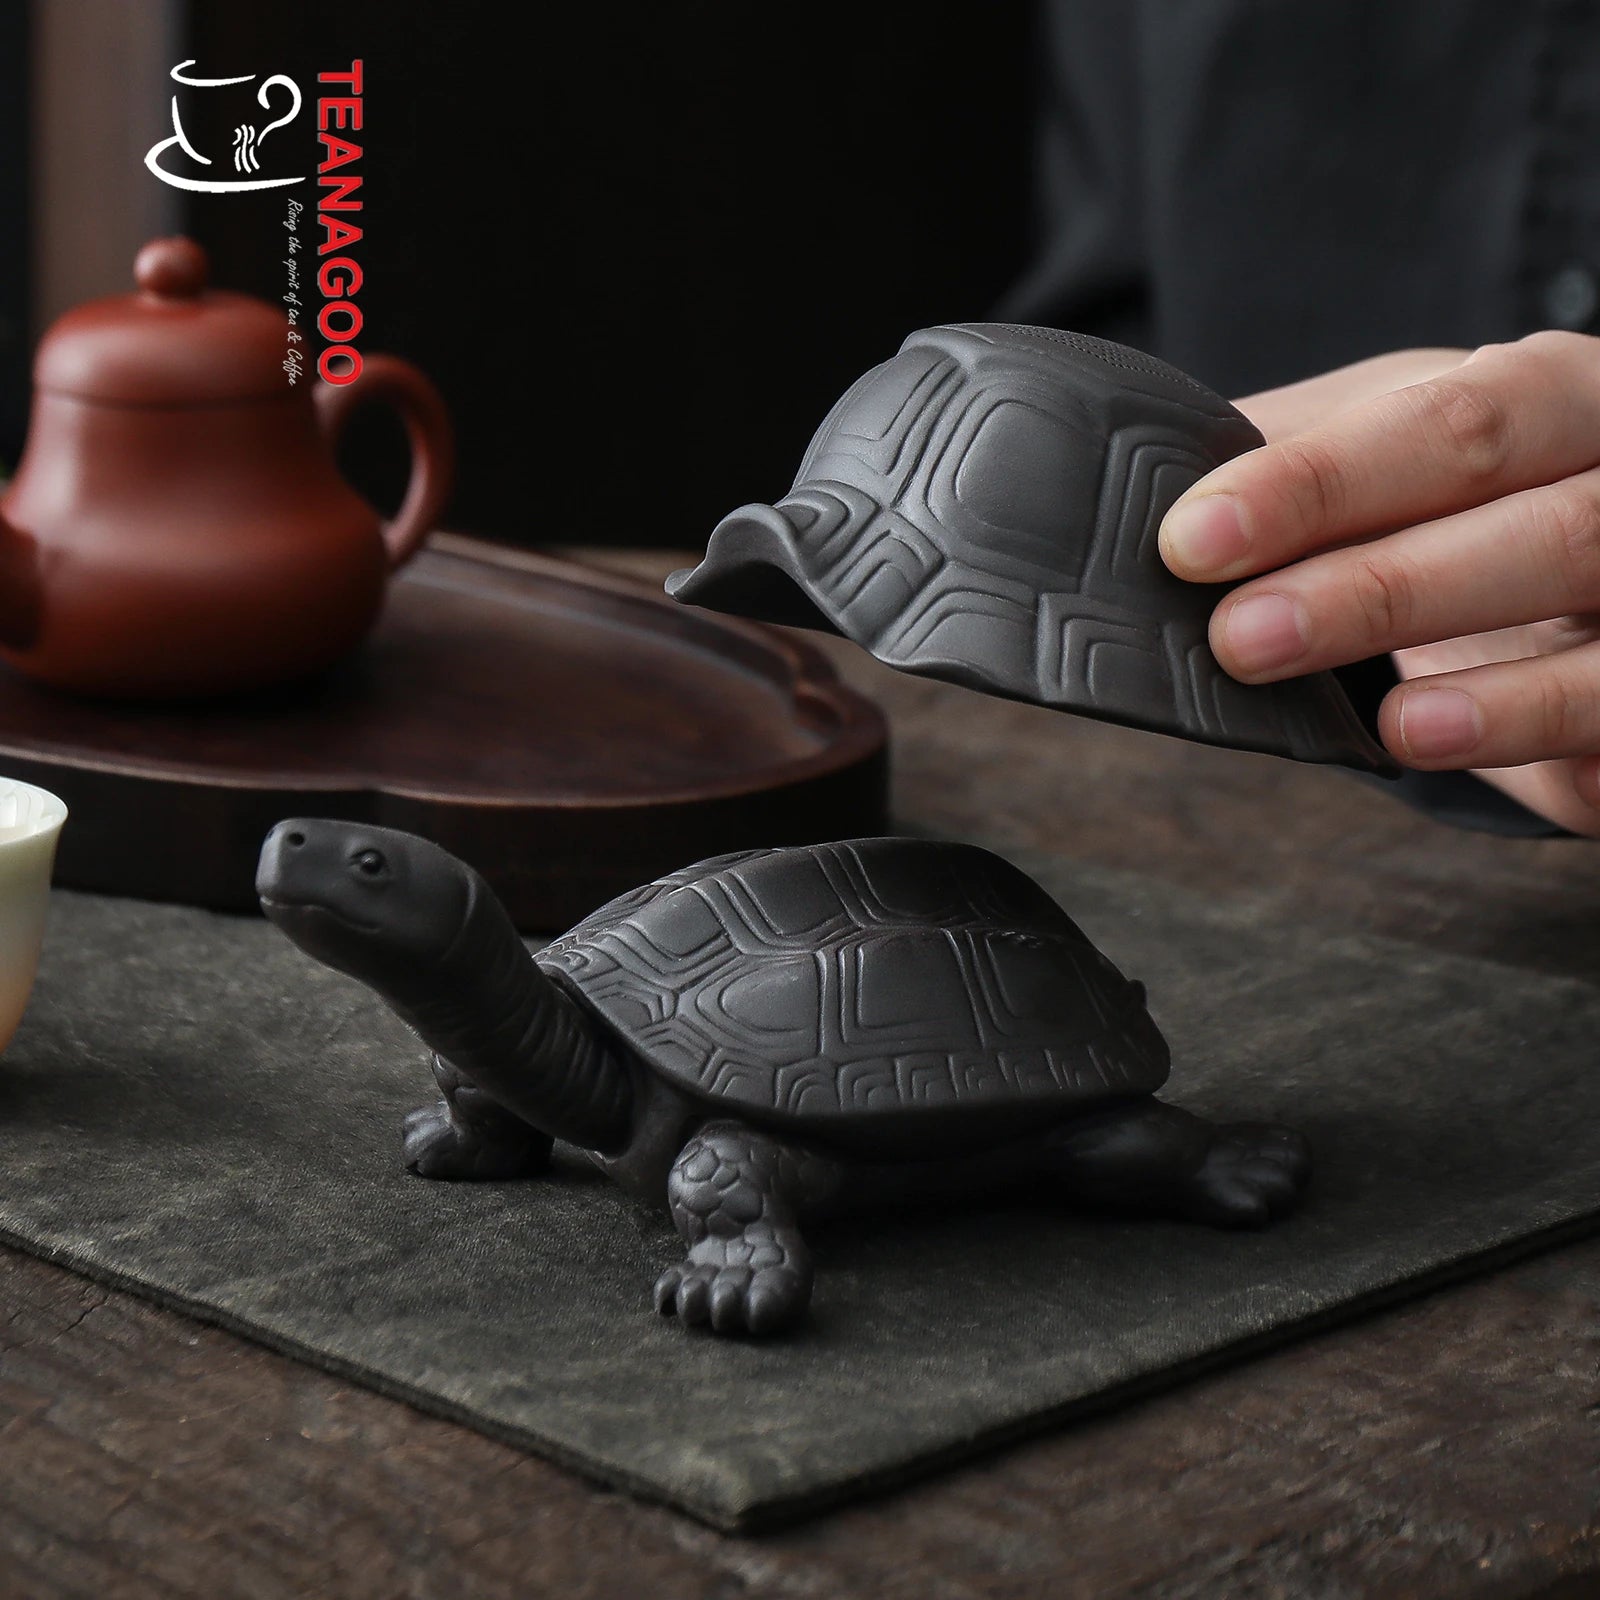 Handmade Tea Strainer and Holder Tea Set Creative Pottery Tea Accessories Teaware